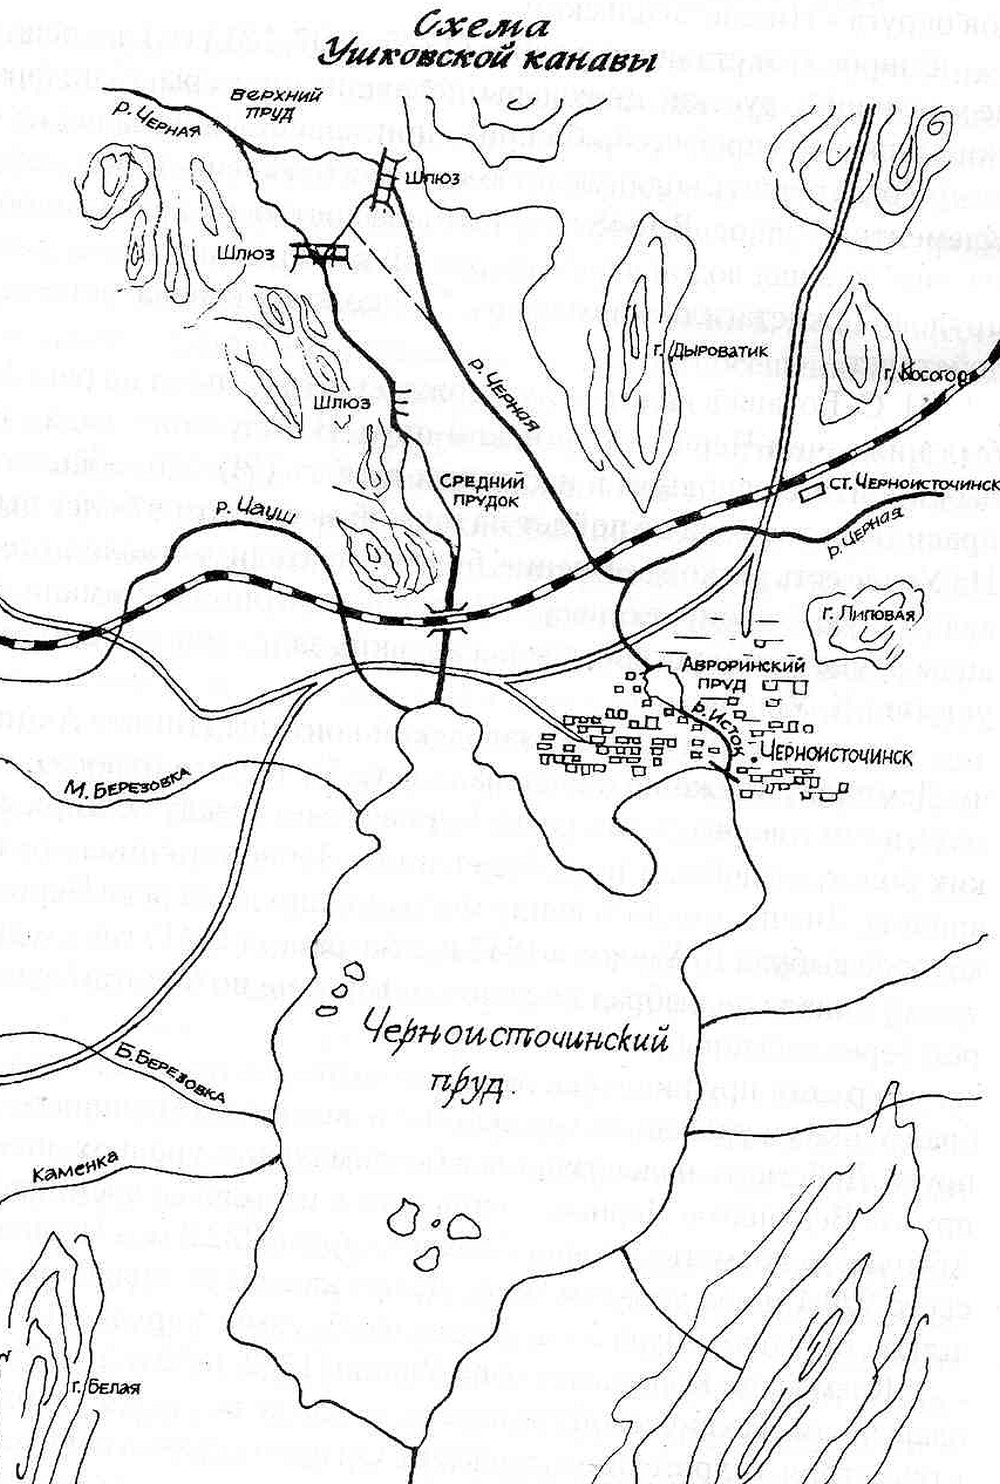 Схема Ушковского канала.